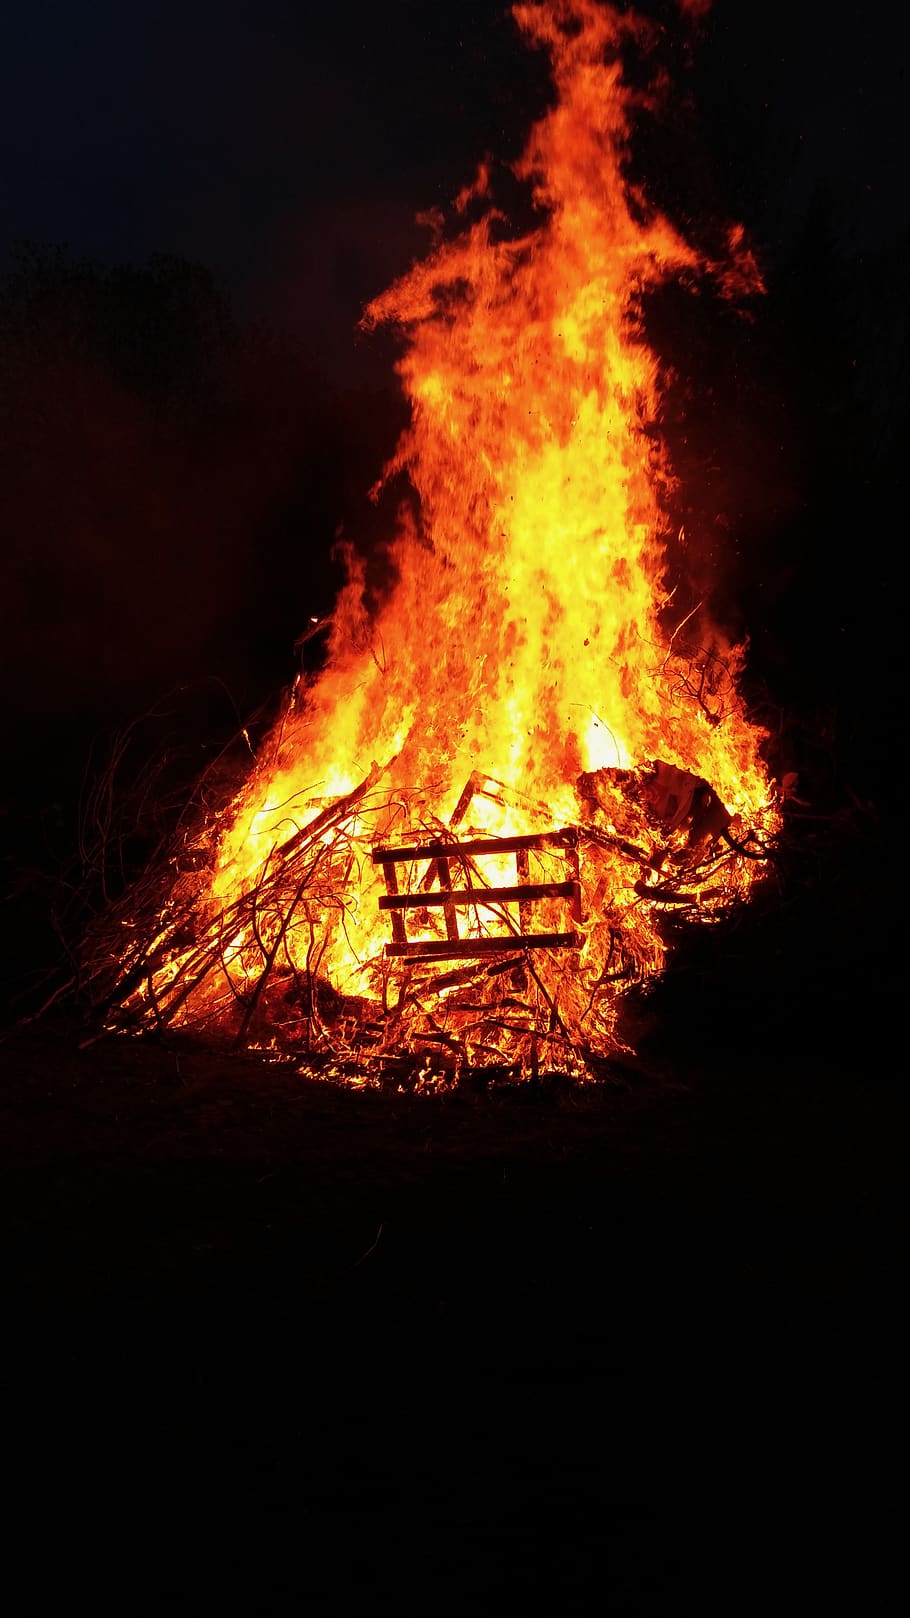 fuego, chimenea, quemar, llama, calor, caliente, brasas, madera, resplandor, naranja